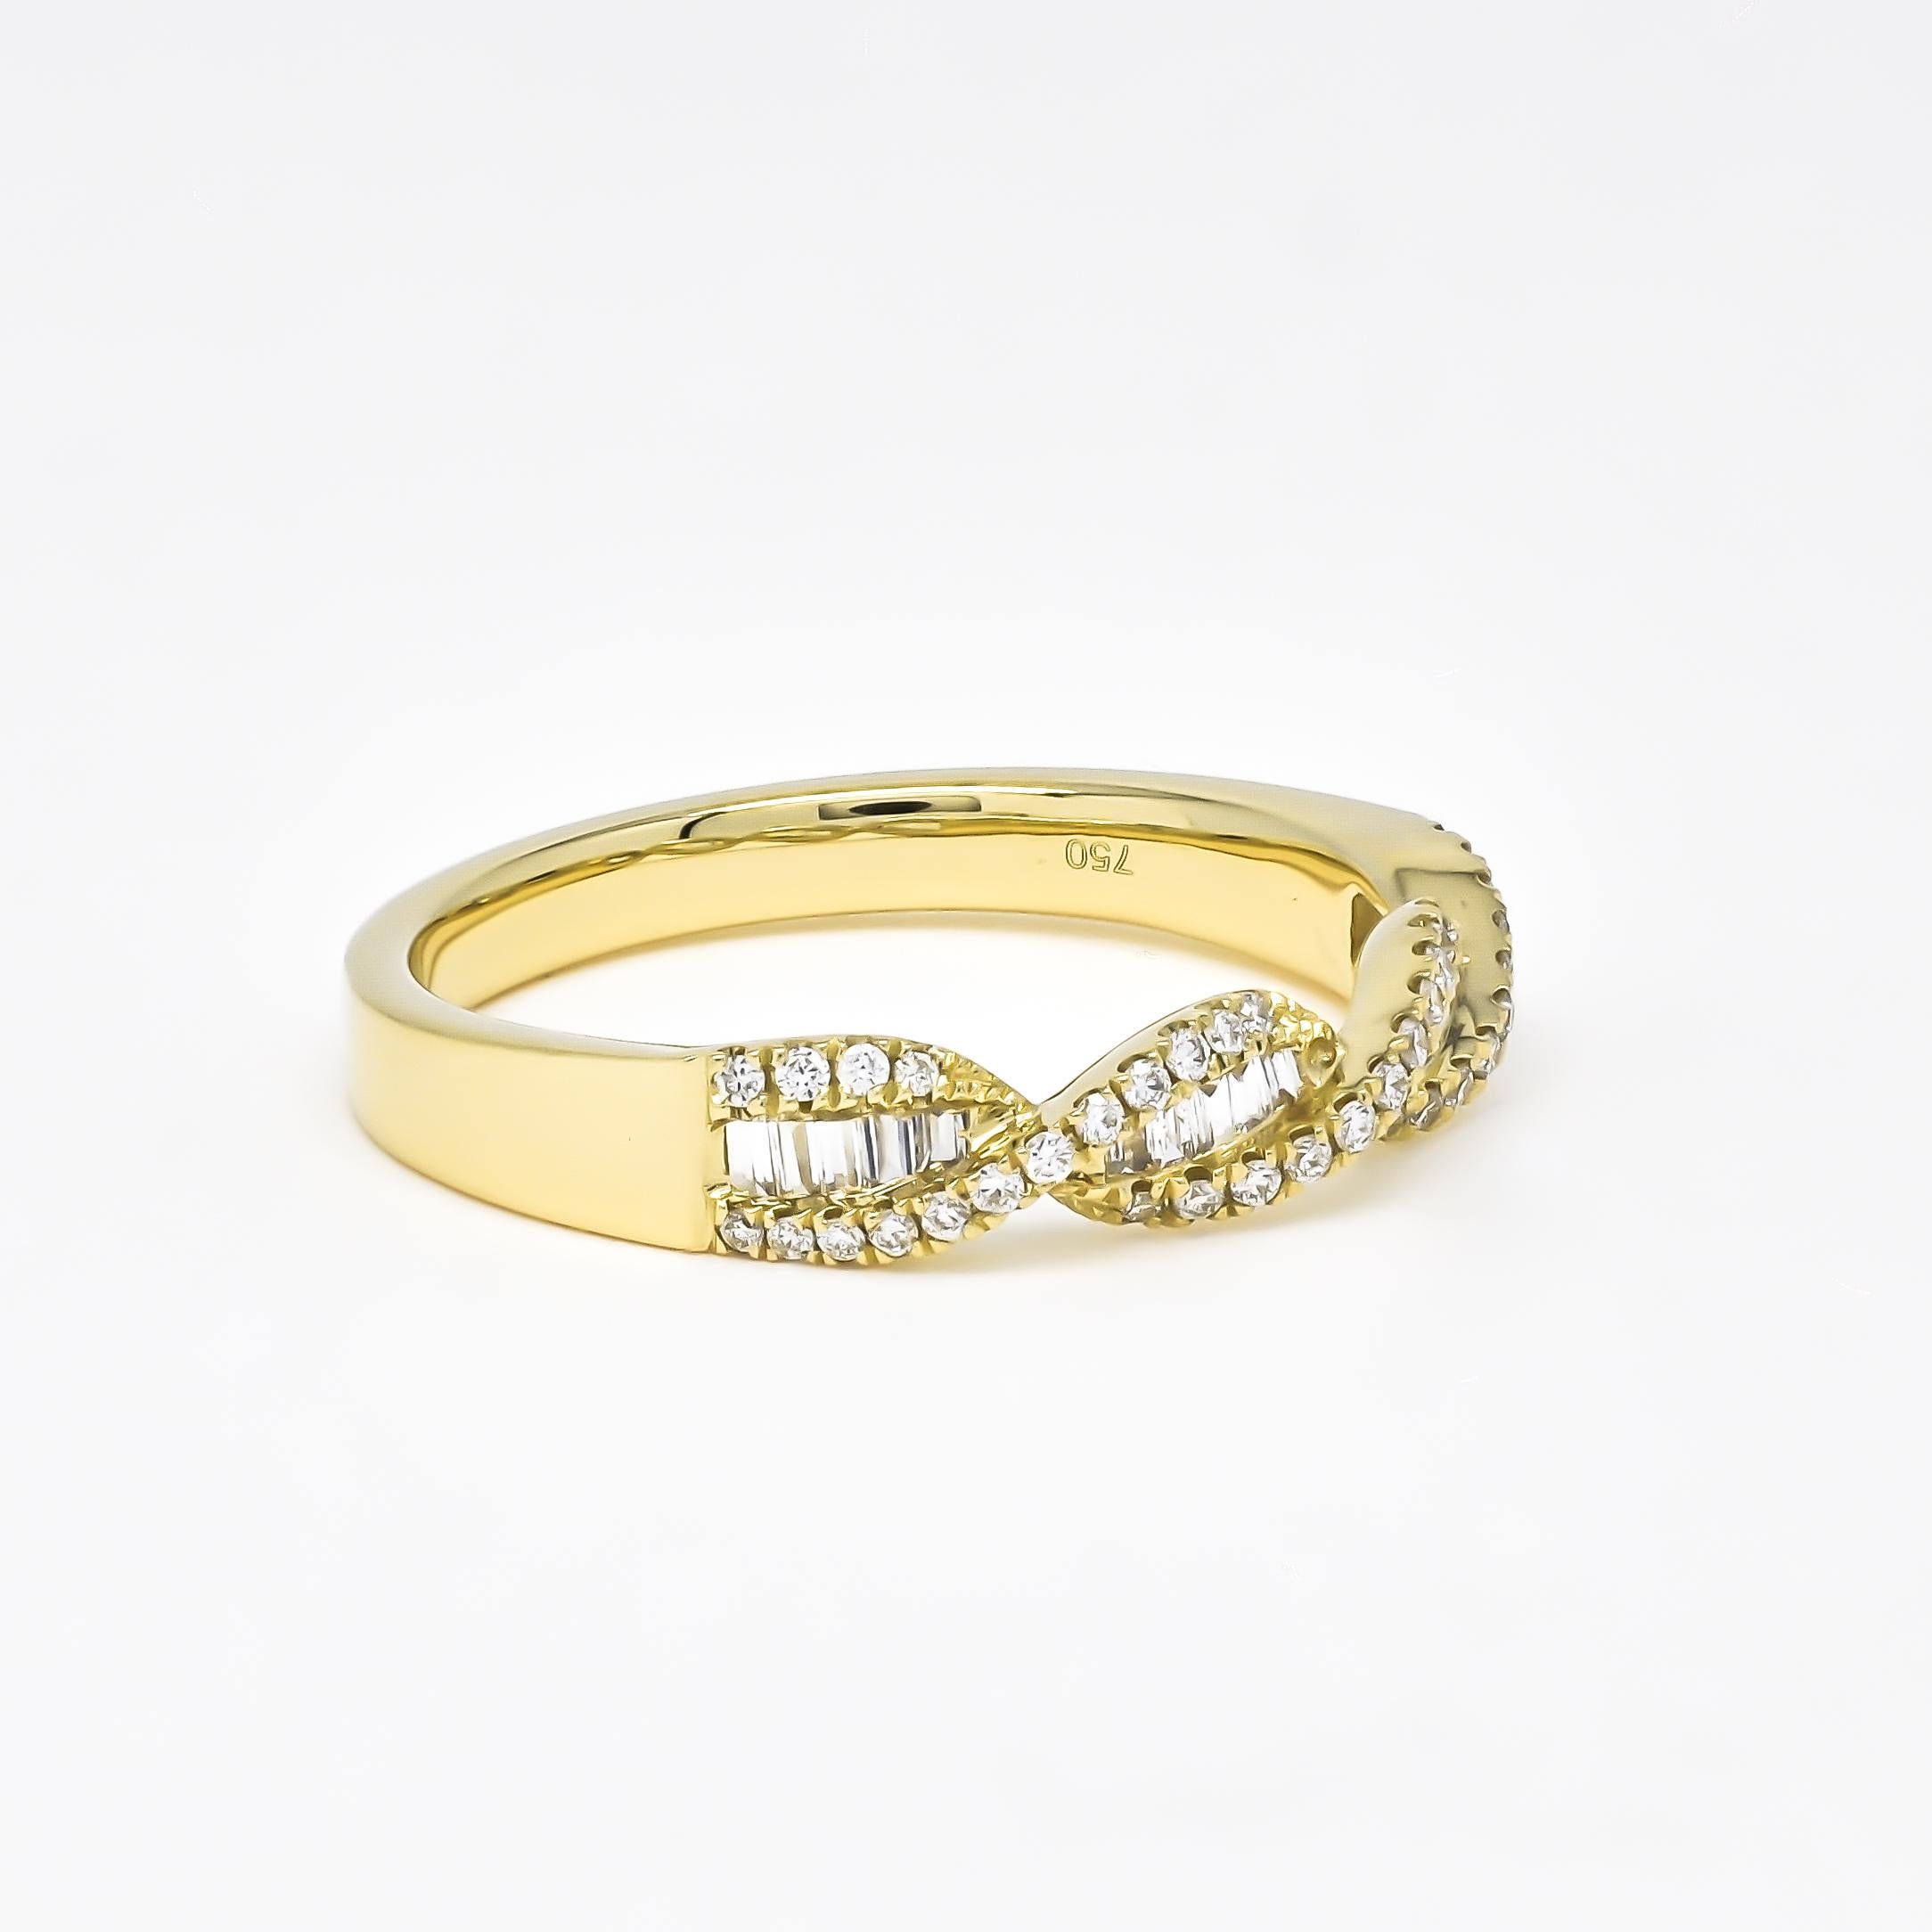 Créez un impact avec notre anneau dynamique DNA Felix, incrusté d'étincelants diamants naturels baguettes et ronds.

Les diamants sont sertis dans de l'or rose ou jaune 18K ou de l'or blanc Felix DNA Felix poli à un lustre époustouflant.

Prenez